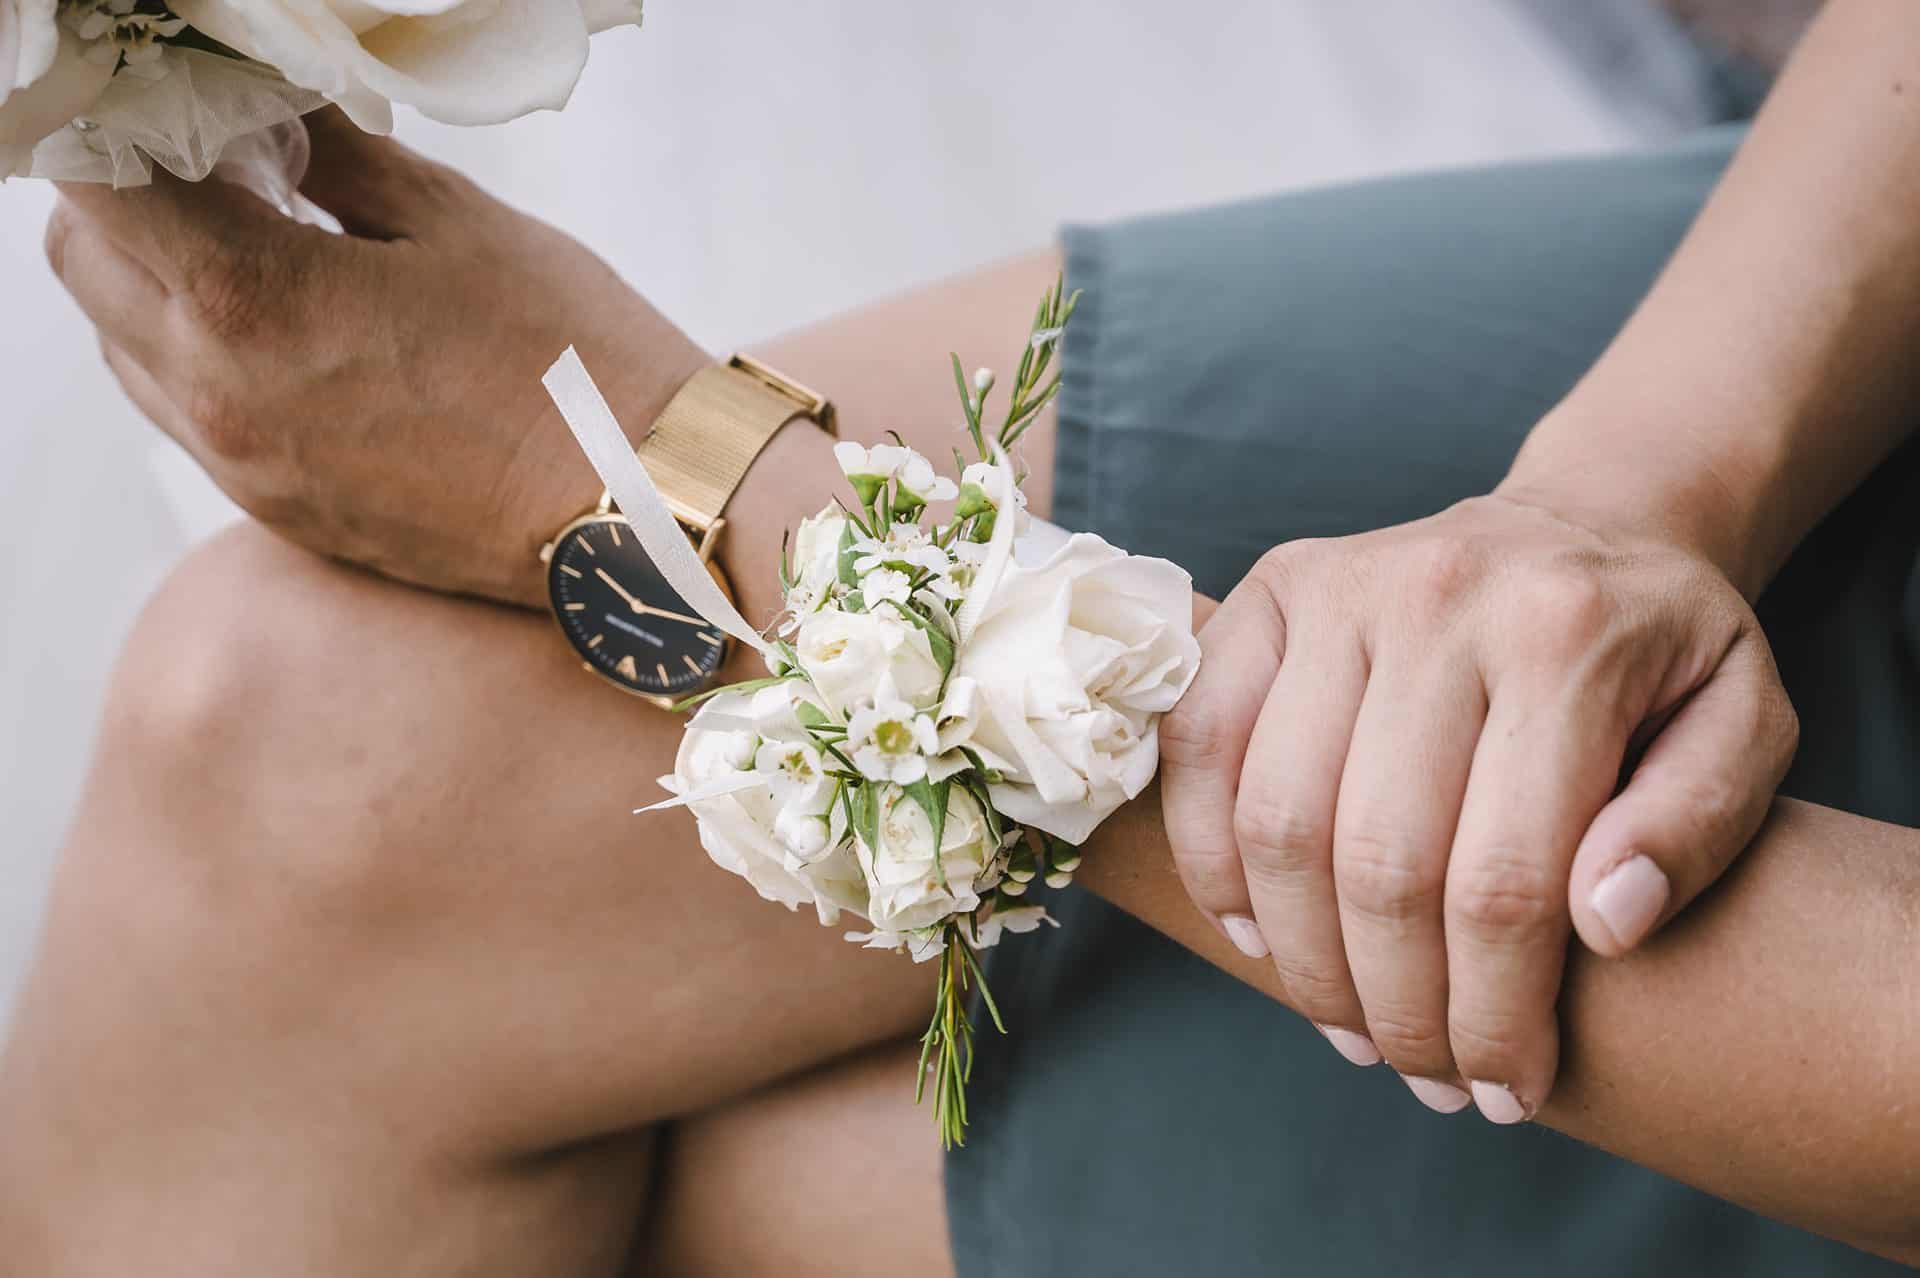 Das Handgelenk einer Frau mit Blumen und einer Uhr.